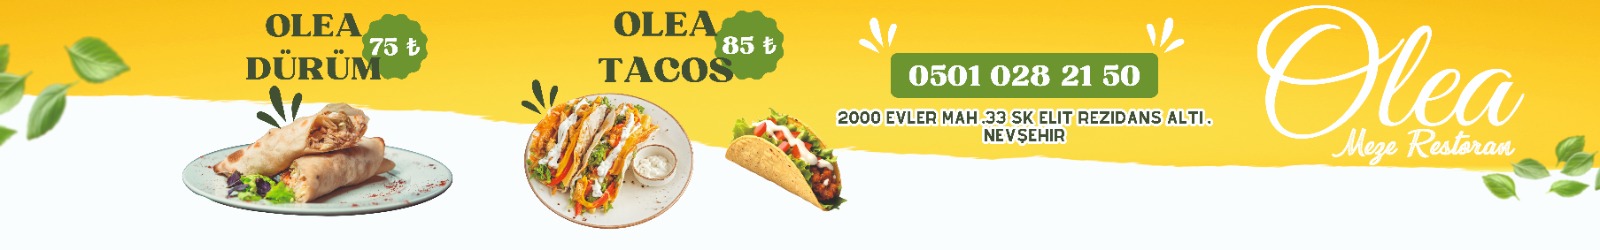 Olea Tacos